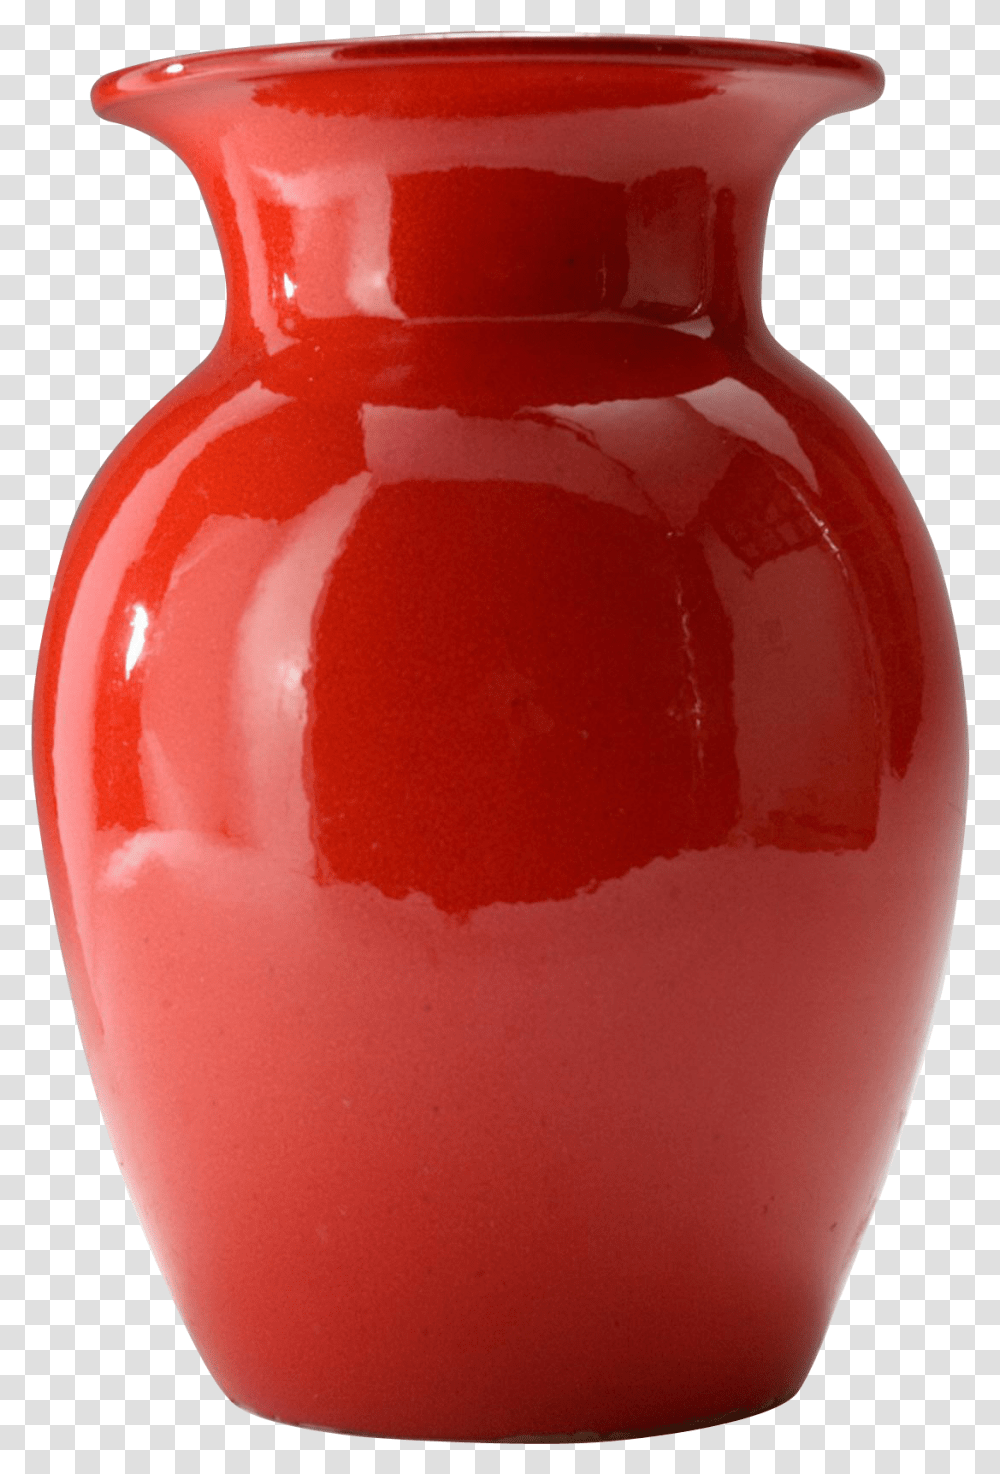 Pottery Empty Flower Vase, Jar, Ketchup, Food, Shelf Transparent Png